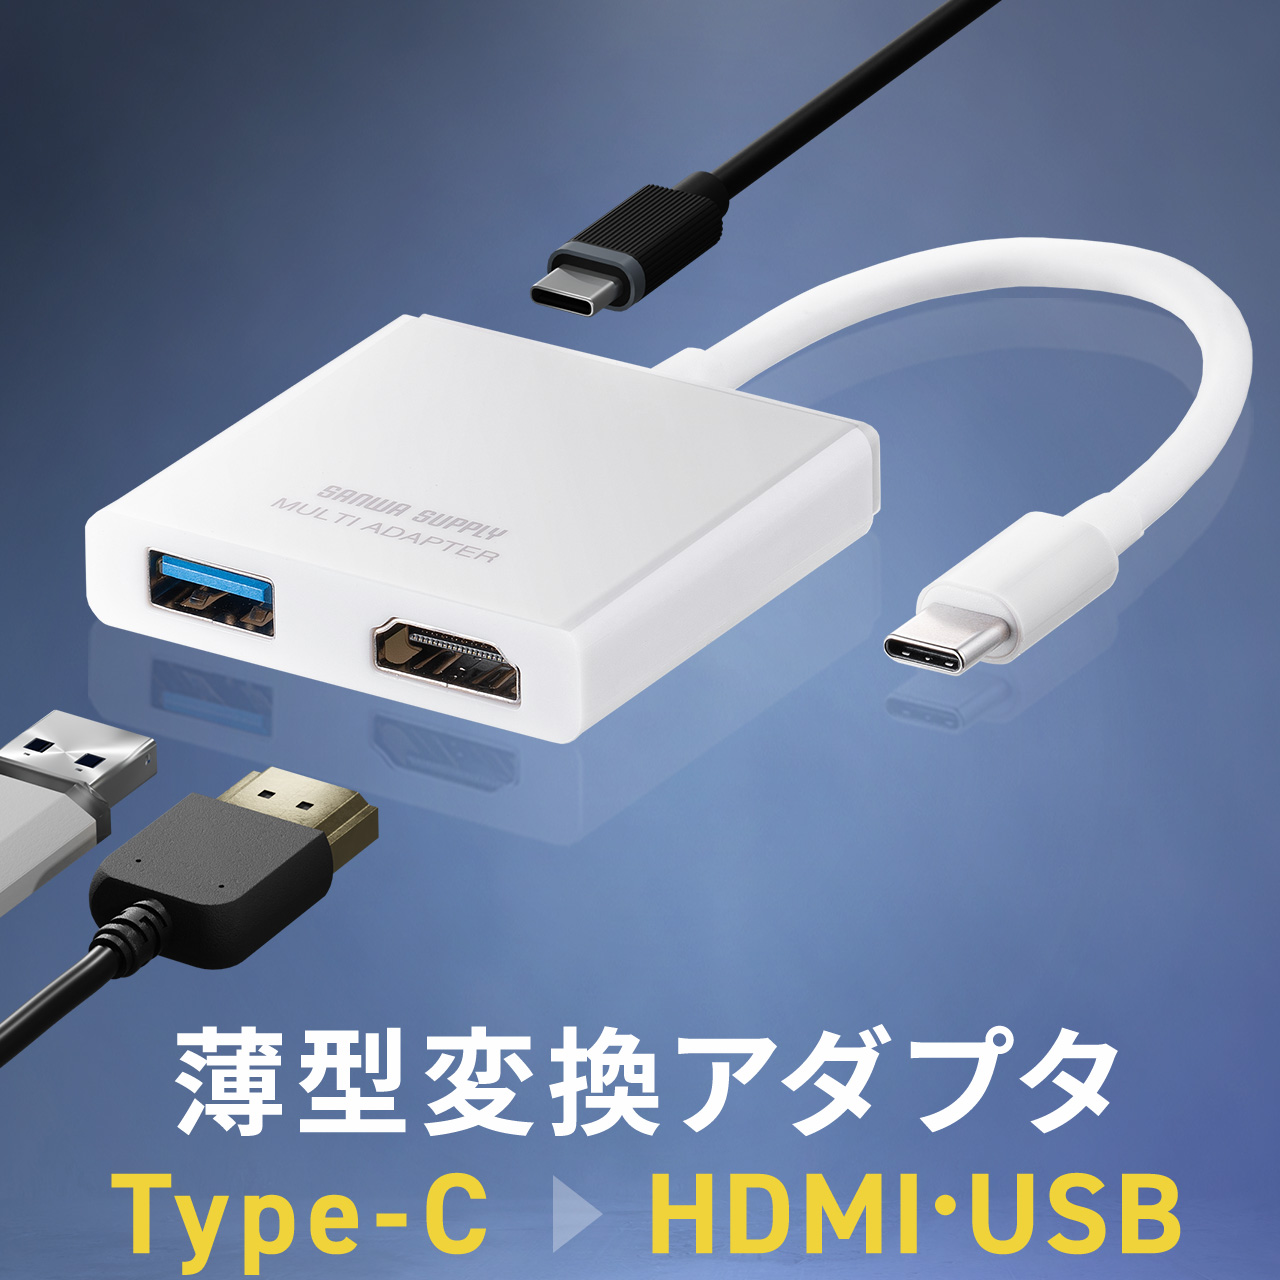 USB HDMI 変換 4K アダプタ USBハブ USB3.0 ディスプレイ モニター 液晶 増設 追加 拡張 HDMI出力 電源不要 PD充電対応 薄型 コンパクト 400-HUBCP21W